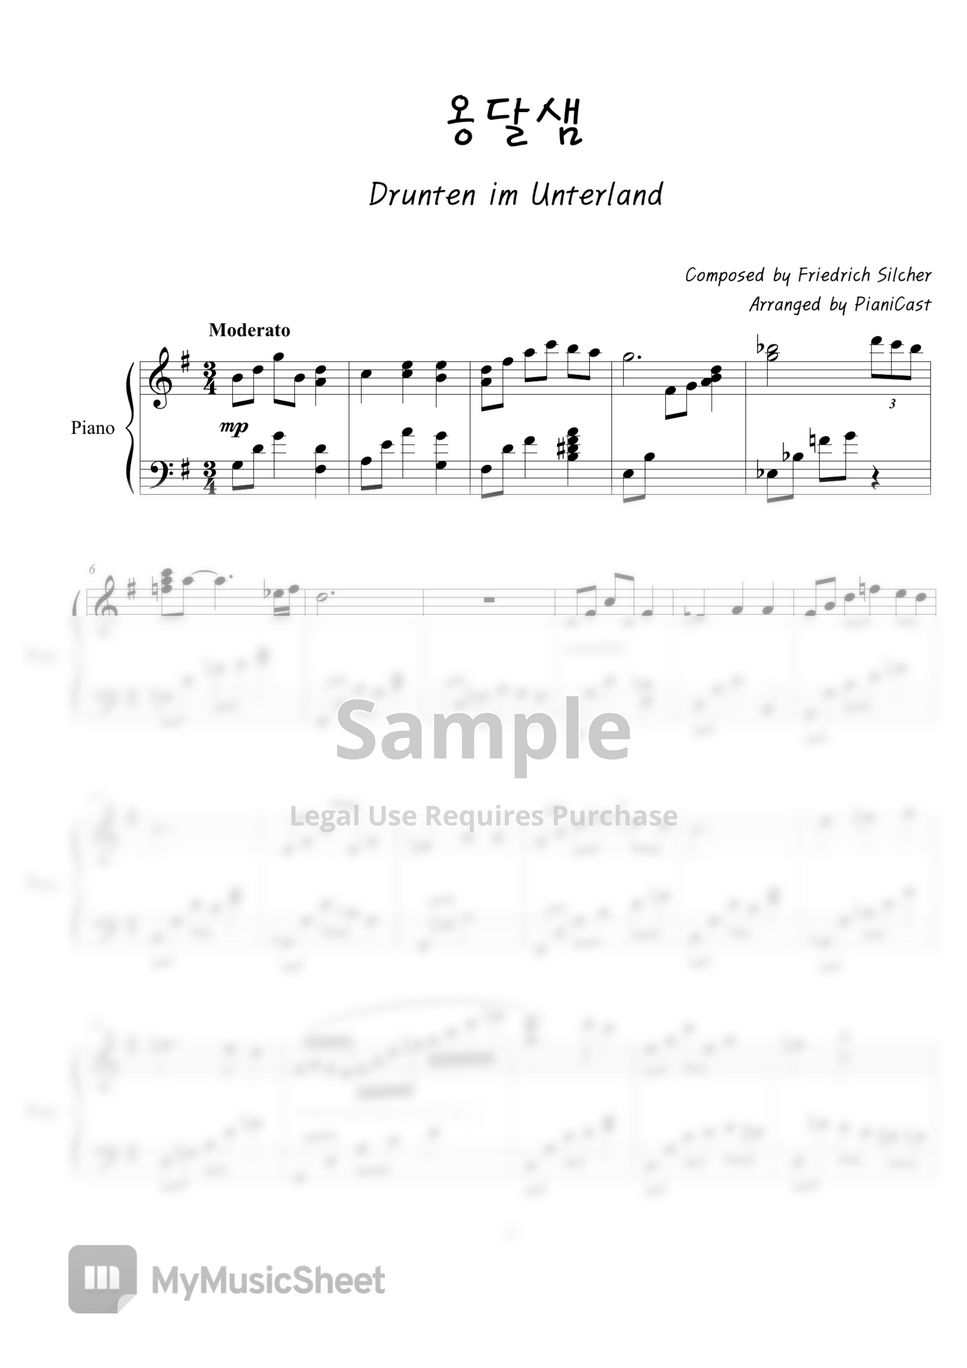 German folk song - Drunten im Unterland by PianiCast